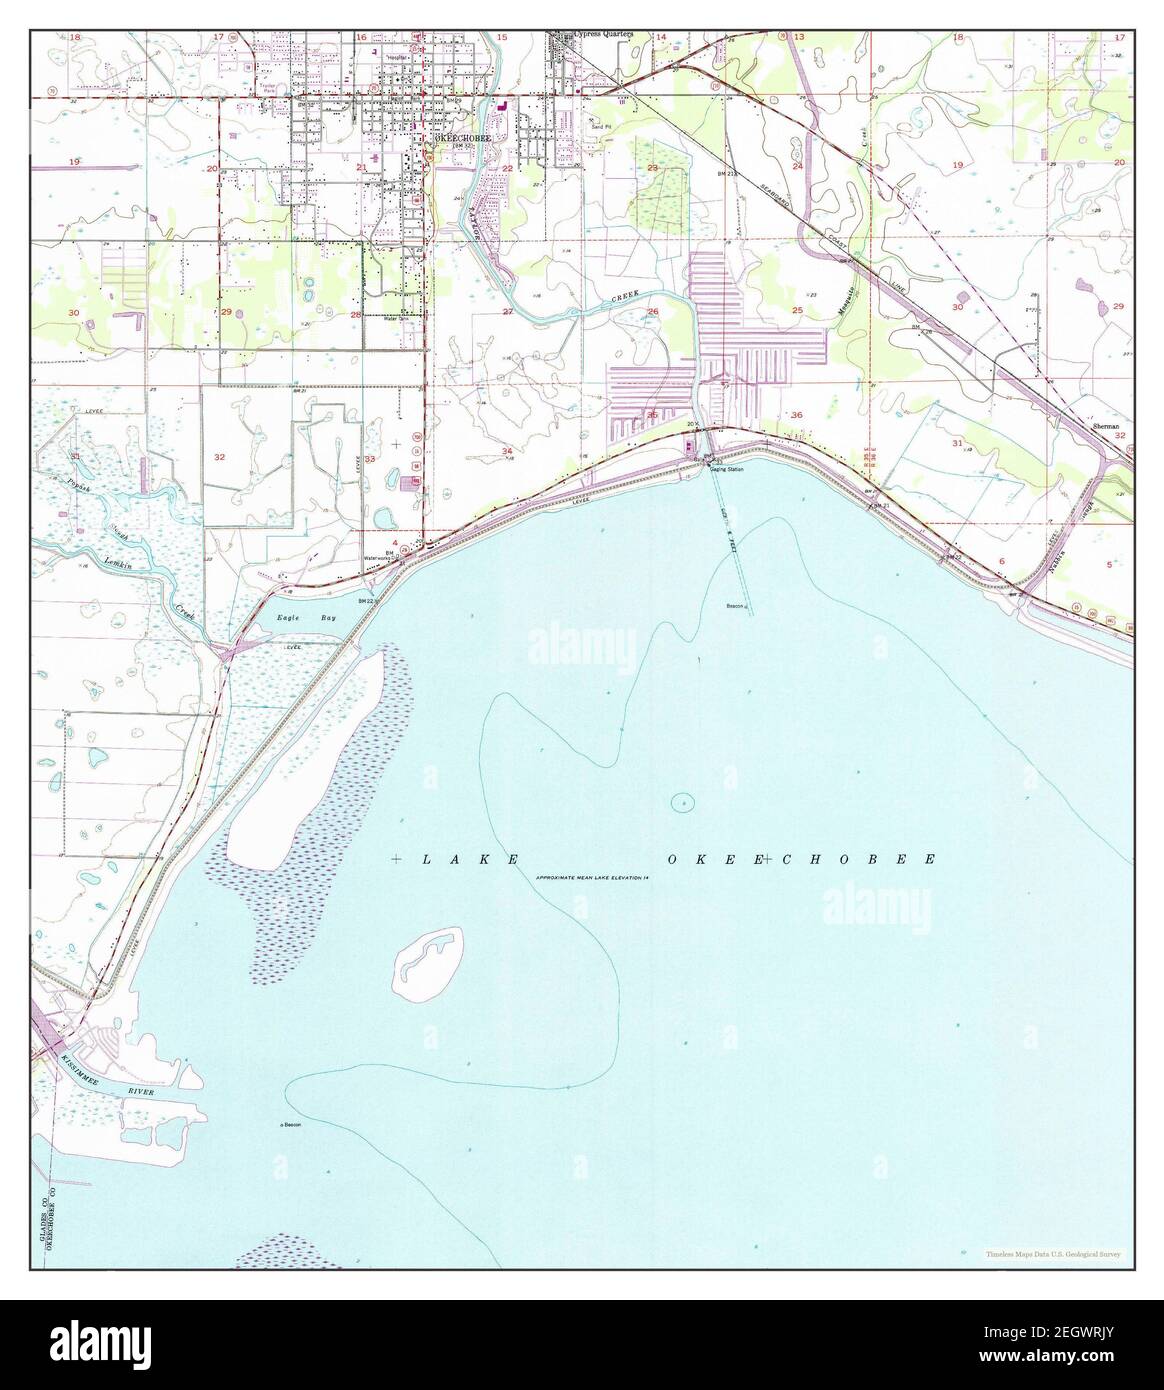 Okeechobee, Florida, Karte 1952, 1:24000, Vereinigte Staaten von Amerika von Timeless Maps, Daten U.S. Geological Survey Stockfoto